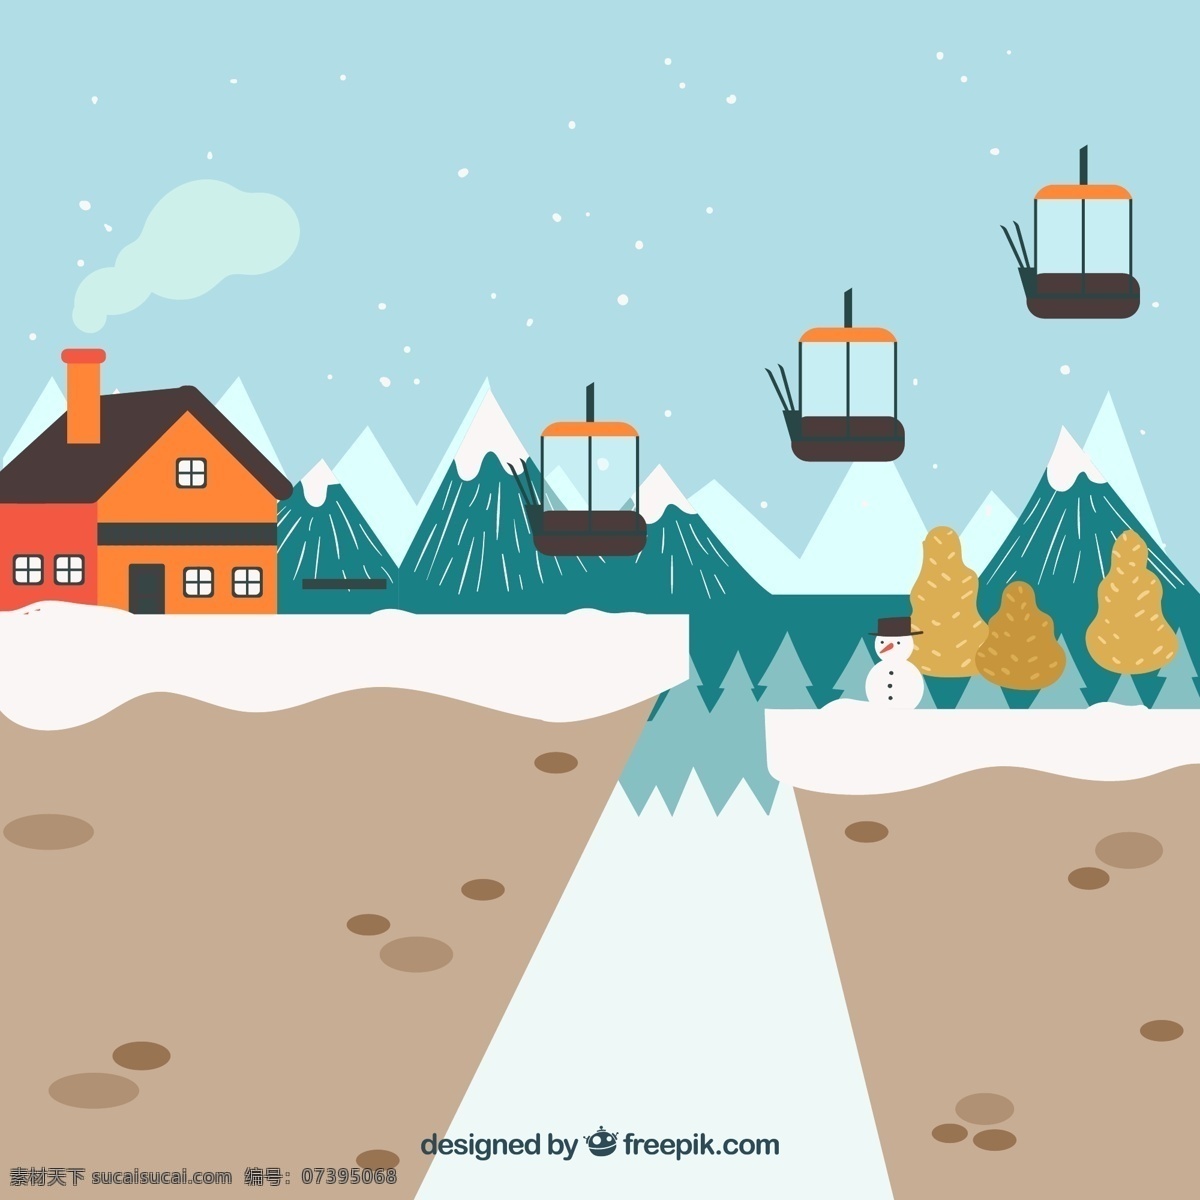 彩绘 冬季 滑雪场 雪山 房屋 滑雪缆车 松树 云朵 雪花 滑雪板 山坡 卡通 风景 动漫动画 风景漫画